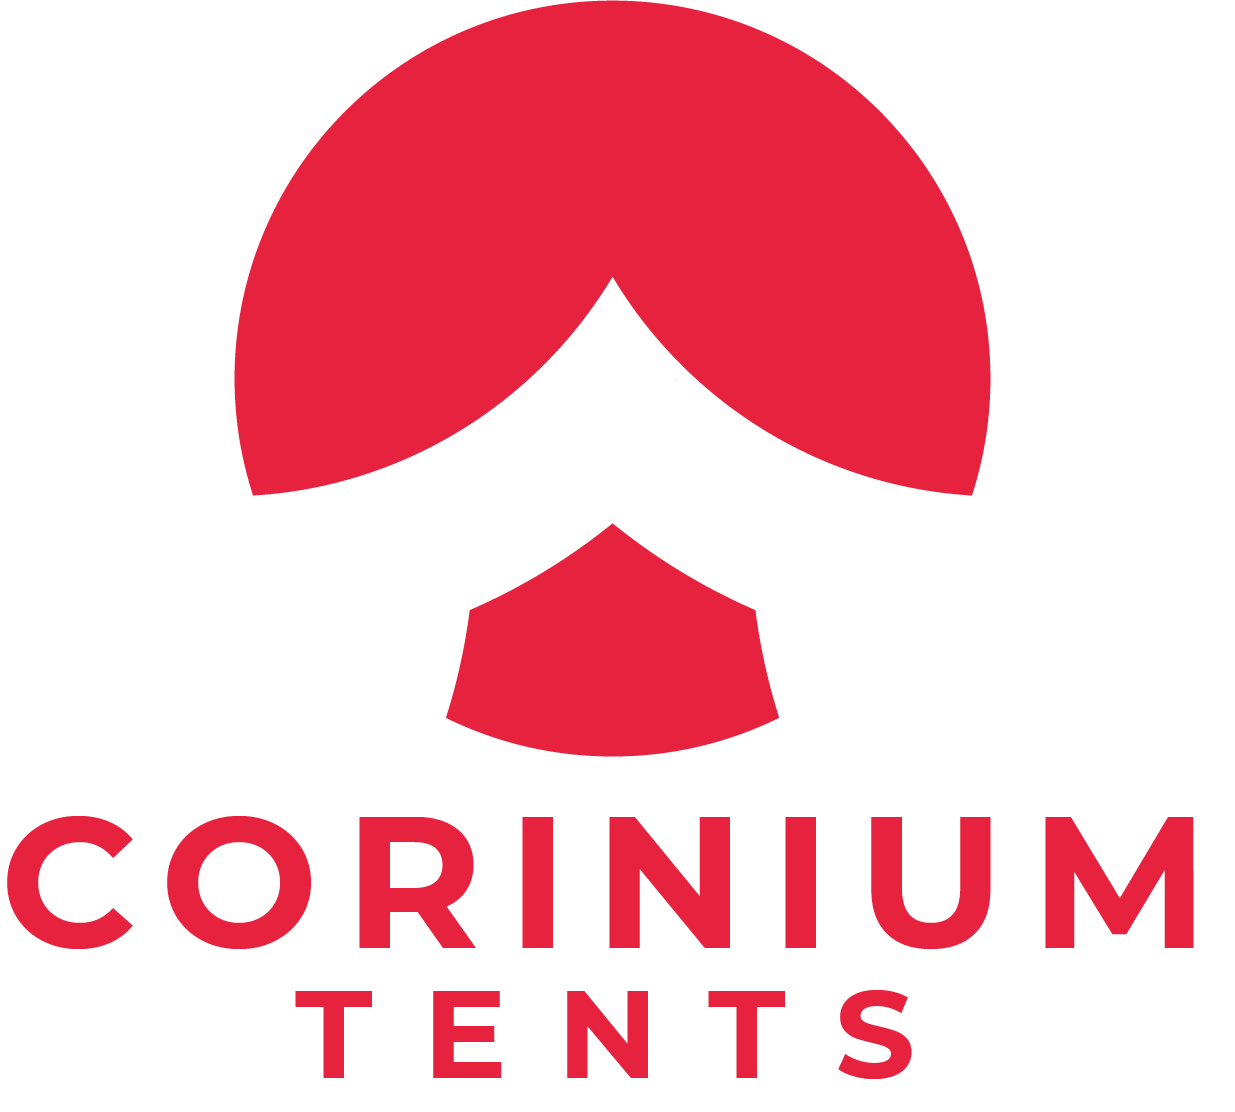 Corinium Tents